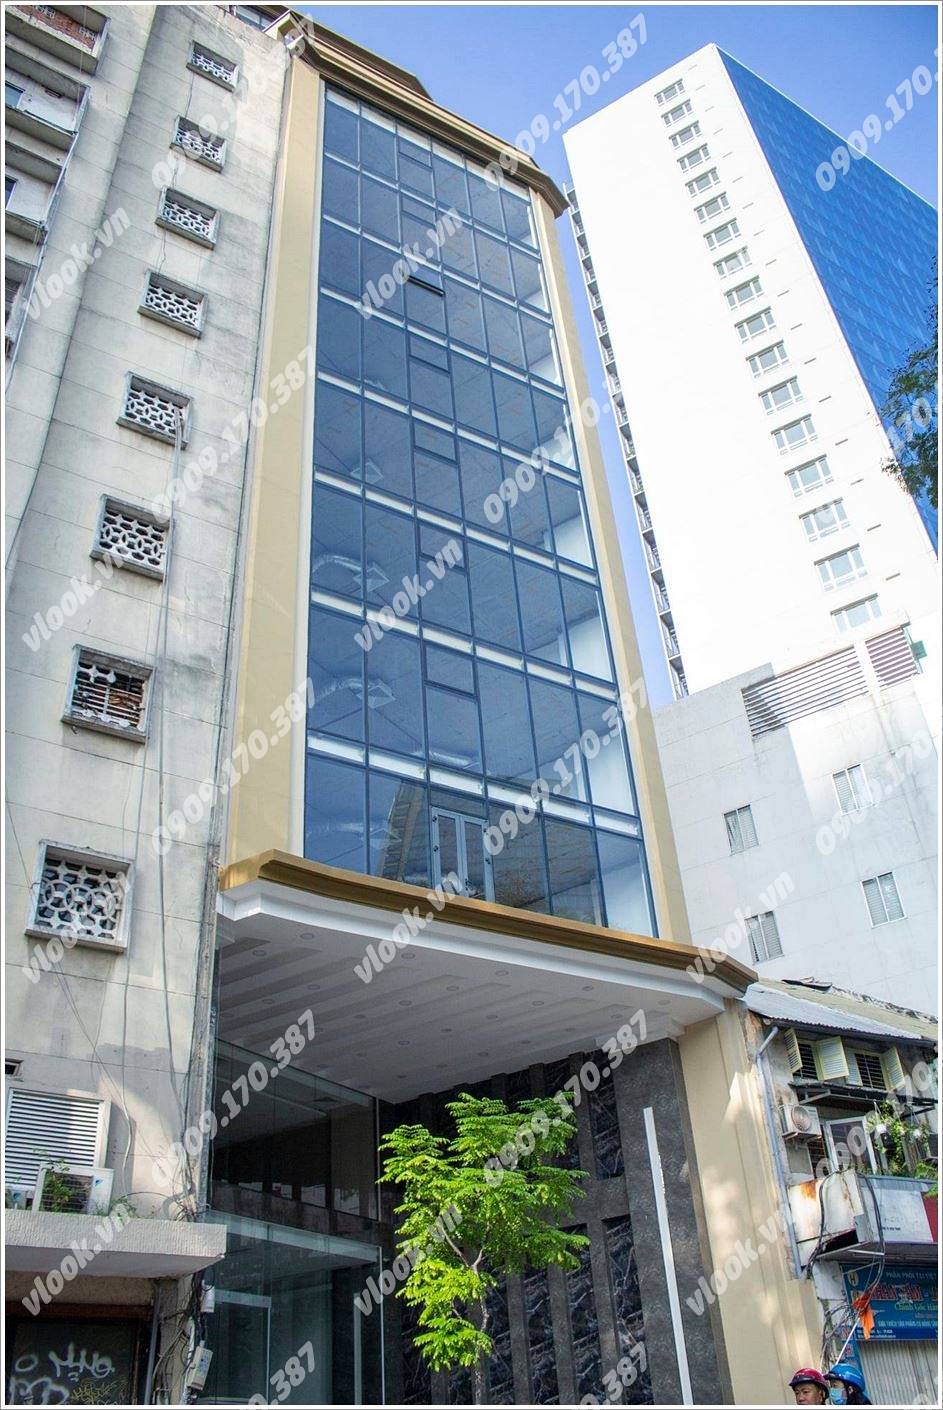 Cao ốc văn phòng cho thuê tòa nhà DAG Building, Hàm Nghi, Quận 1 - vlook.vn